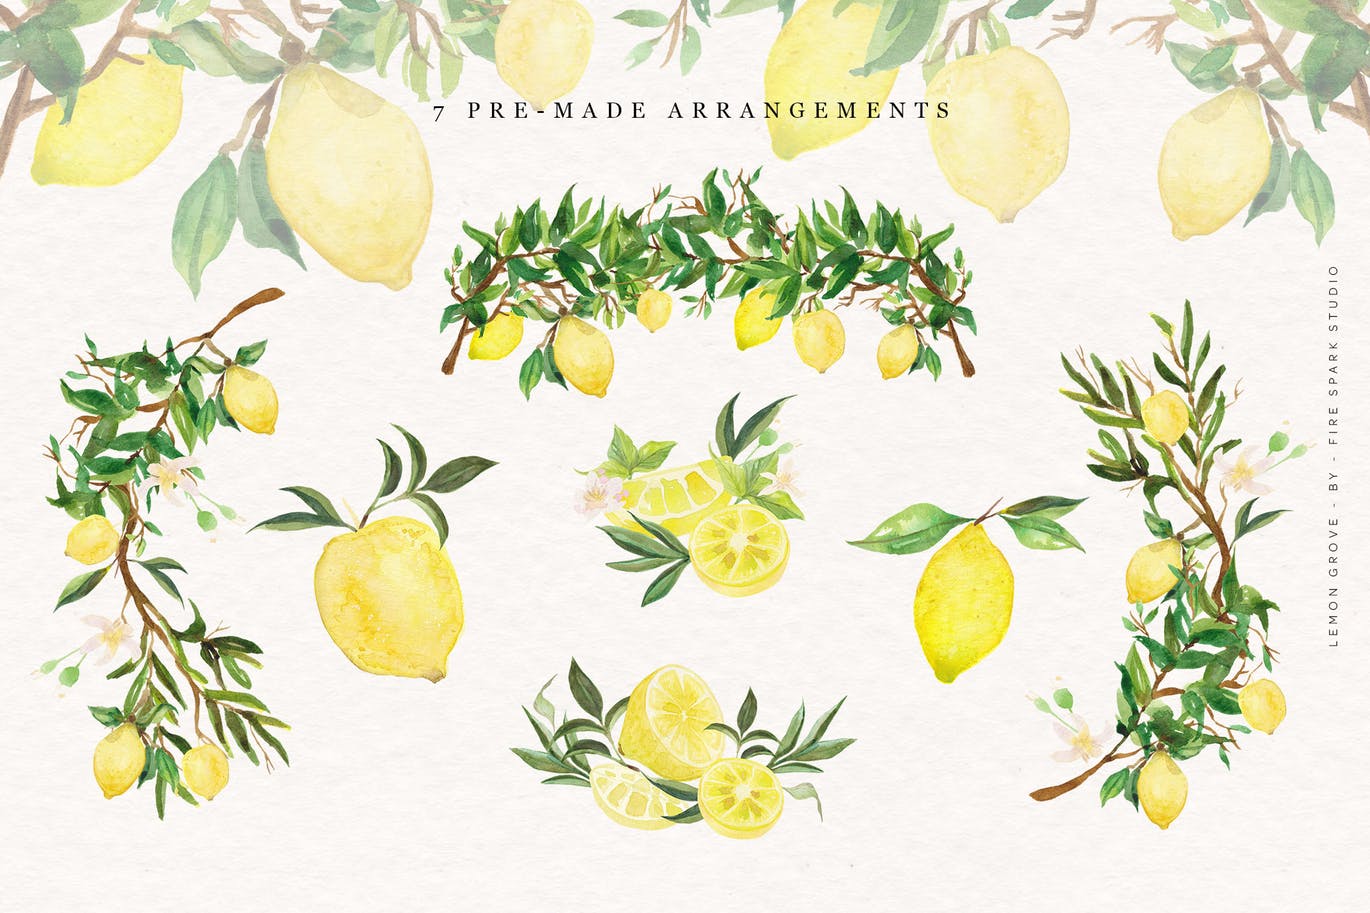 柠檬树水彩手绘矢量插画第一素材精选素材 Lemon Grove Watercolor Illustrations插图(5)